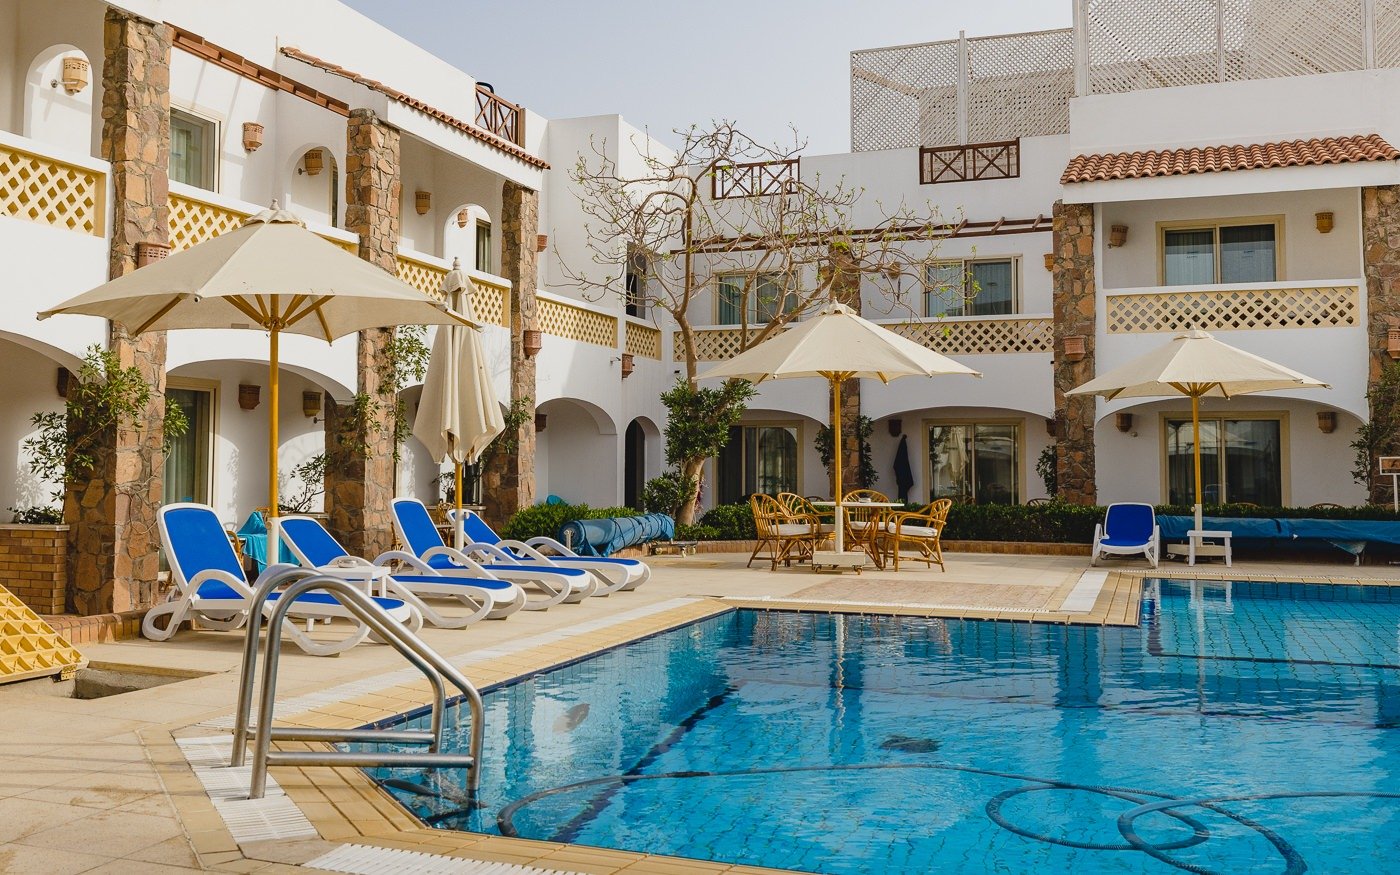 Hotel with a pool in Sharm el Sheikh